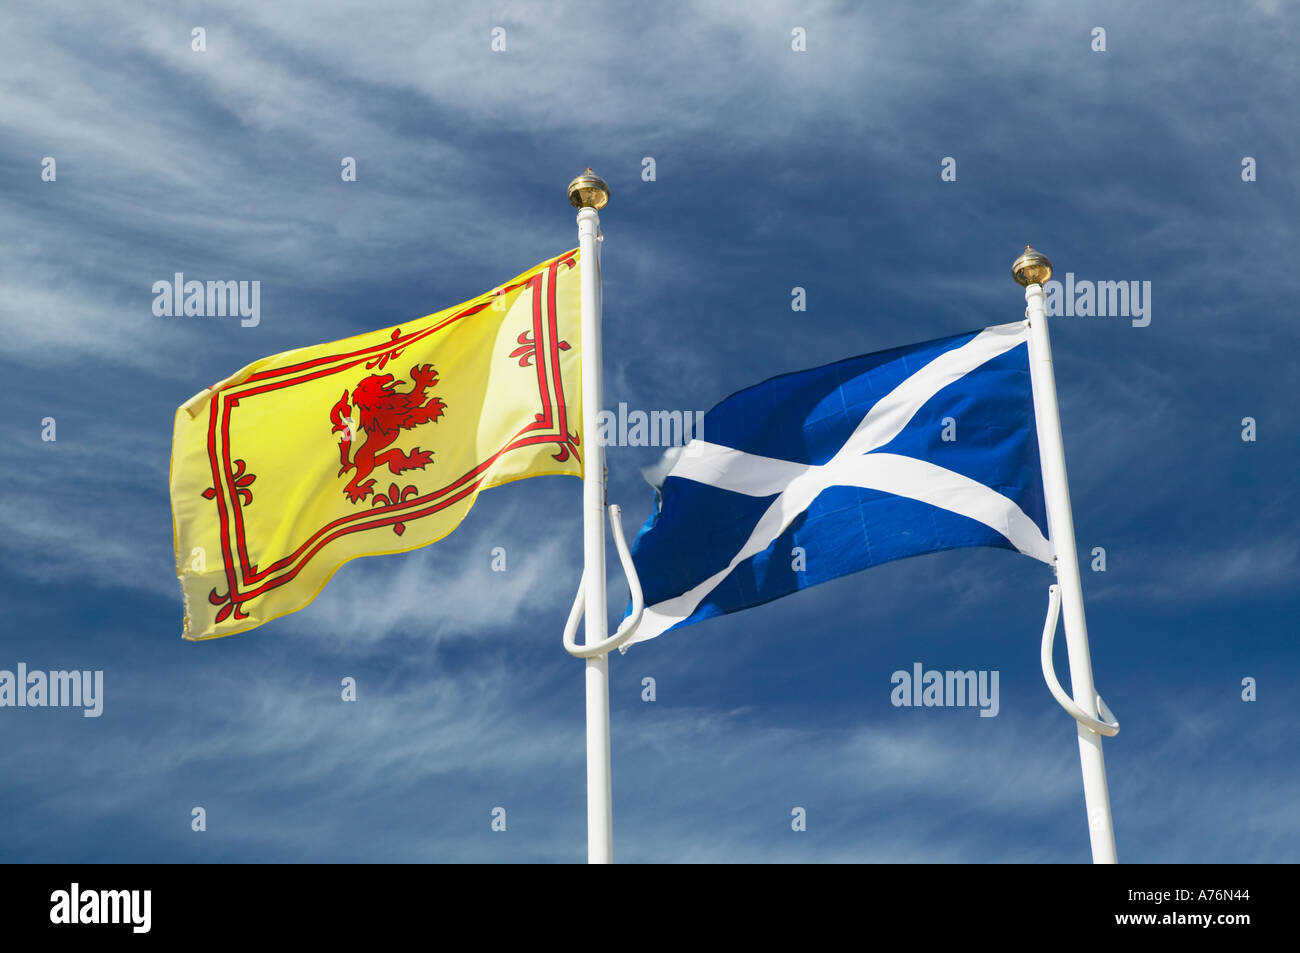 La Scozia. Il St Andrews bandiera, la bandiera nazionale della Scozia e la scozzese Royal banner con il leone rosso rampante Foto Stock